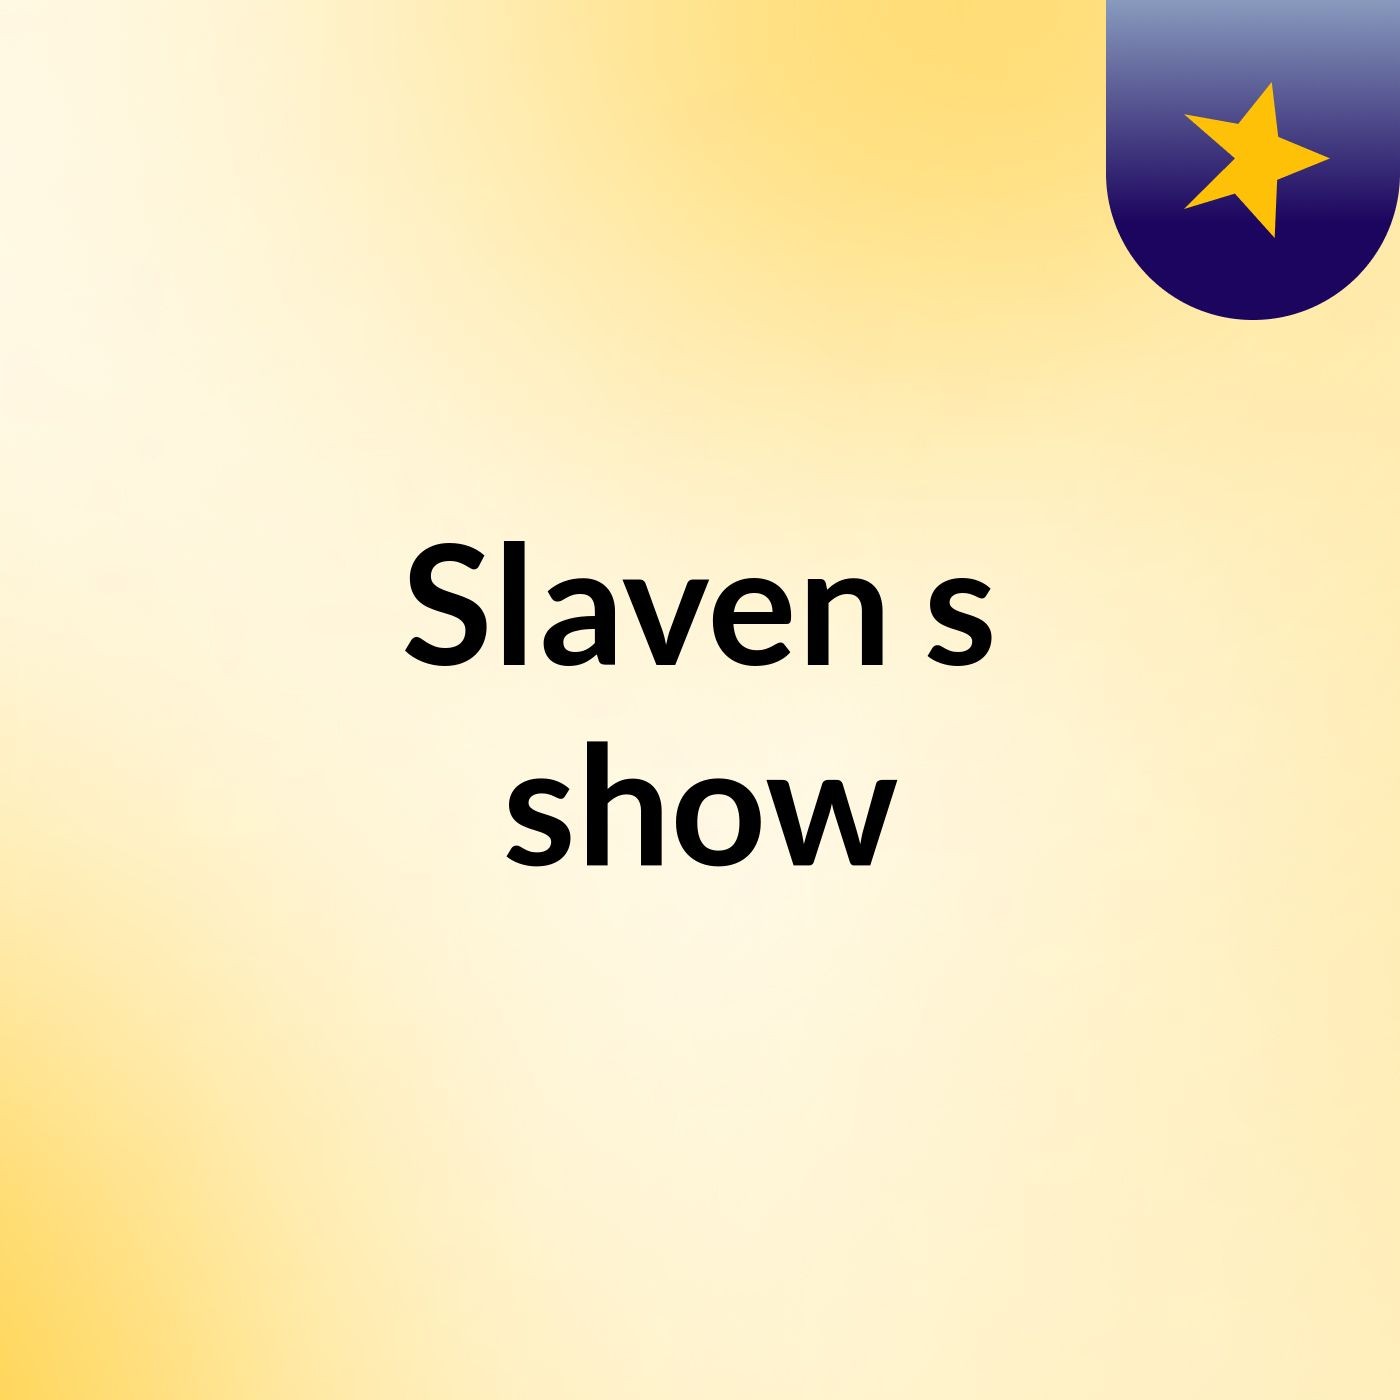 Slaven's show